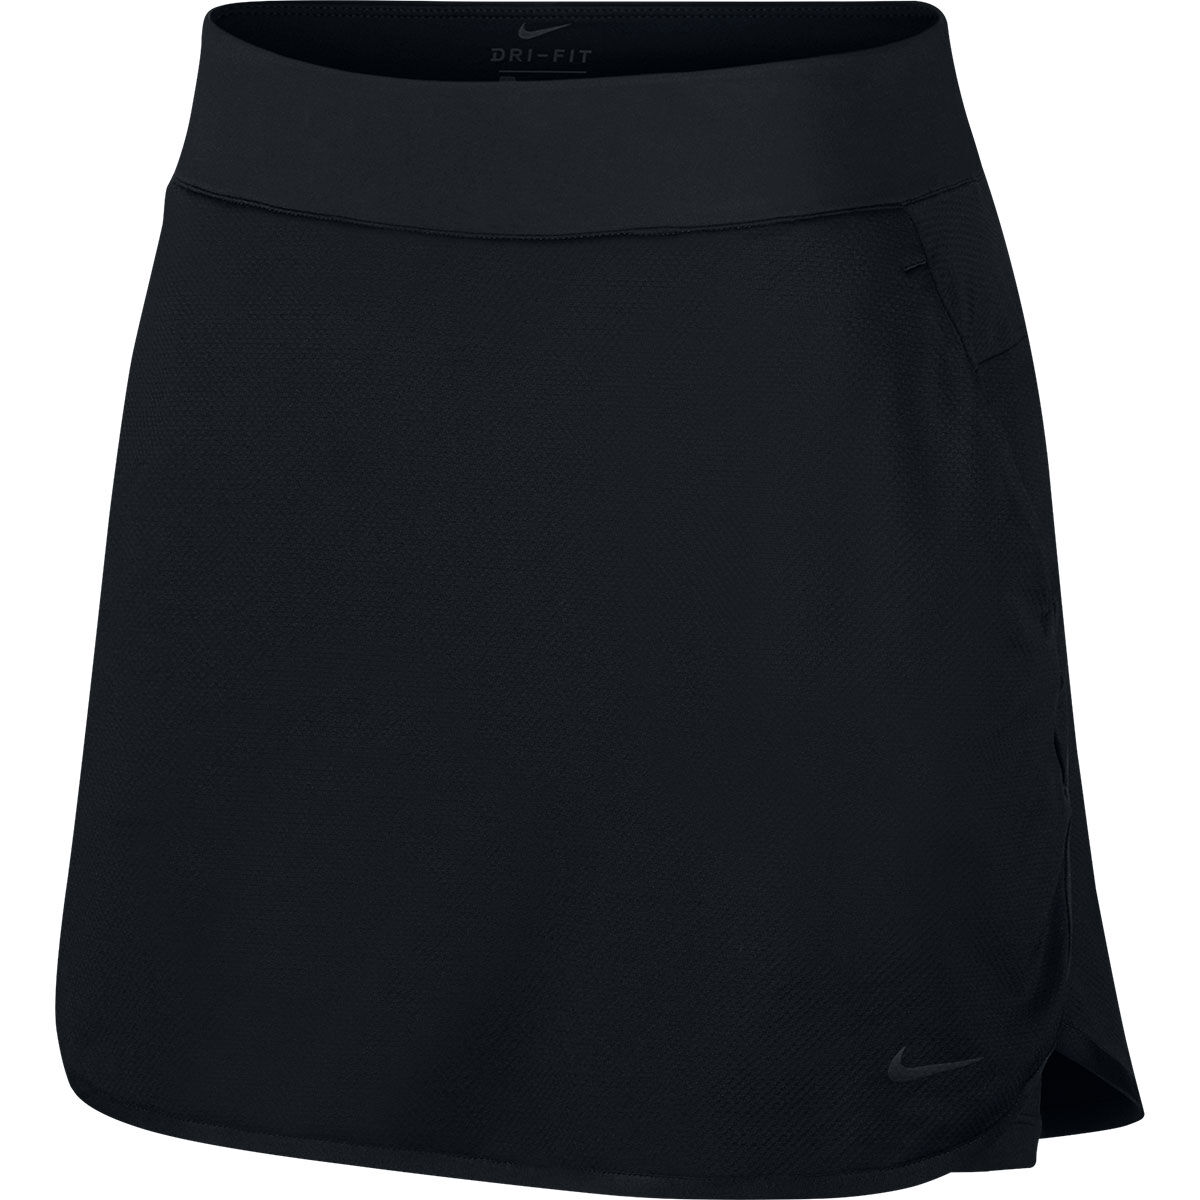 Jupe-Short Nike Golf Dri-Fit 17 Inch Pour Femmes, femme, Large, Noir/Noir/Noir | Online Golf